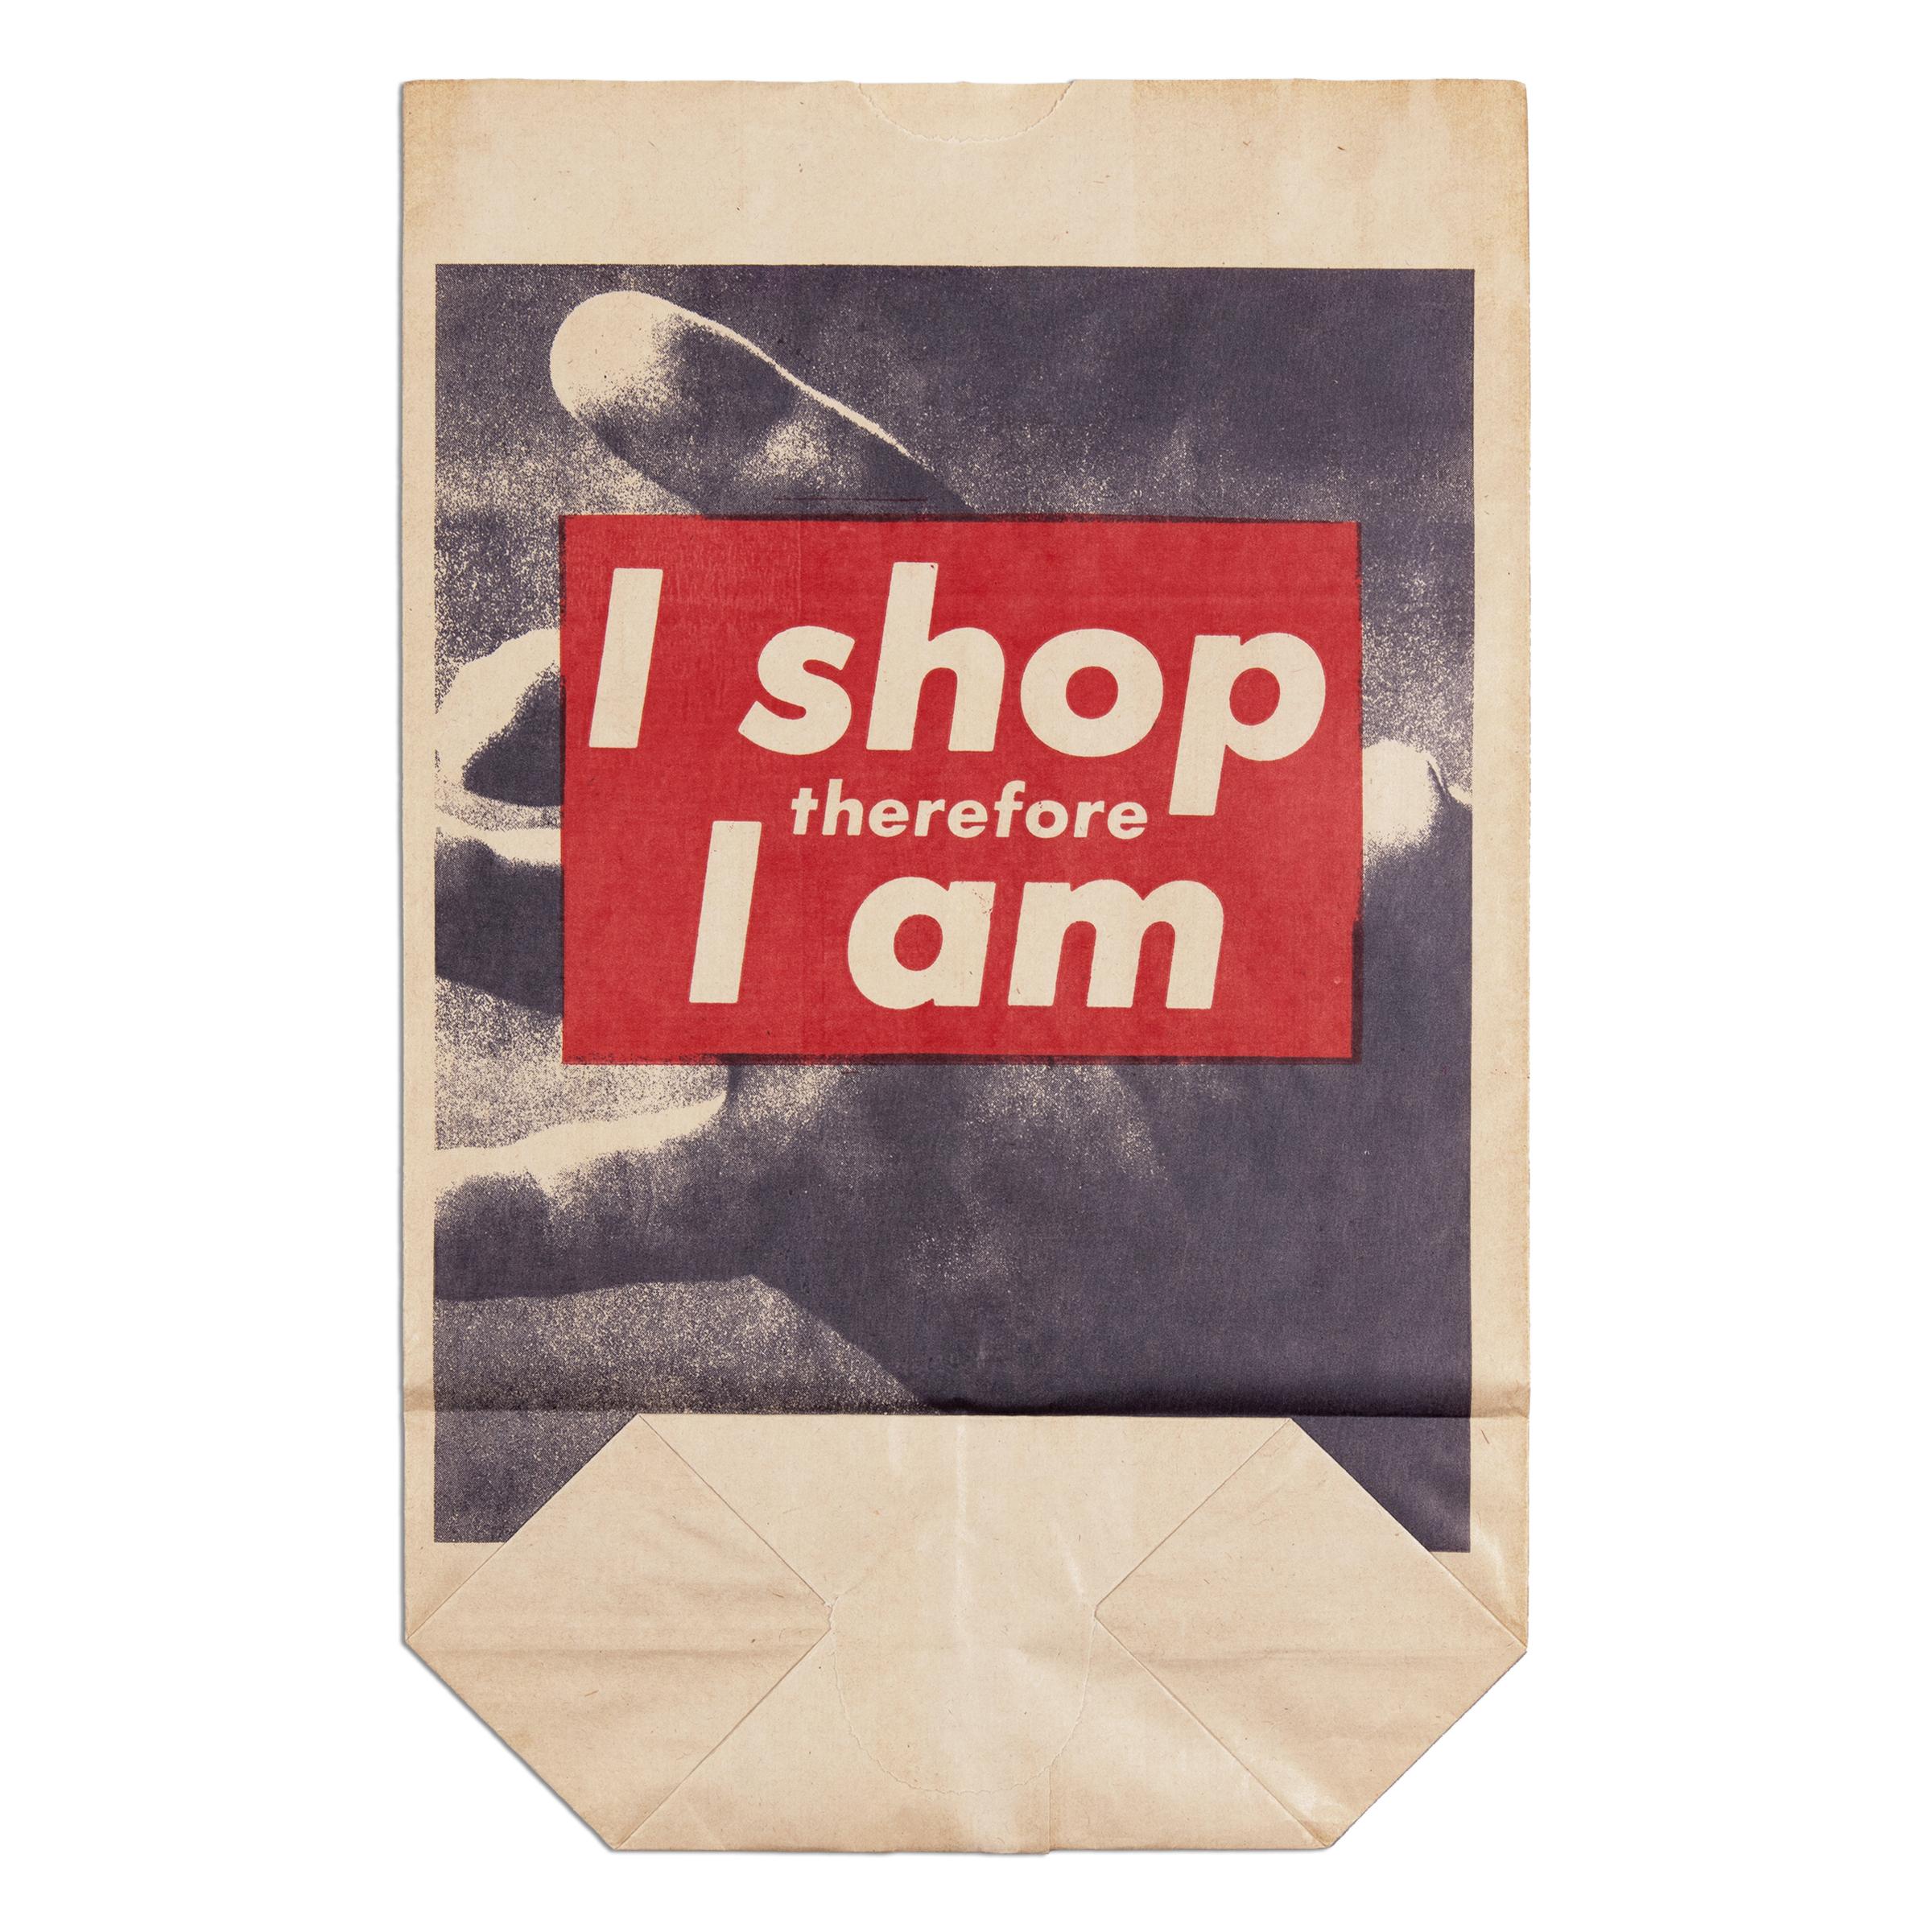 Barbara Kruger (1945, américaine)
I+I Shop Therefore I Am, 1990
Support : Photolithographie sur sac à provisions en papier
Taille de l'édition : 9000
Dimensions : 17 5/16 x 10 3/4 in (43.9 x 27.3 cm)
Éditeur : Kölnischer Kunstverein,